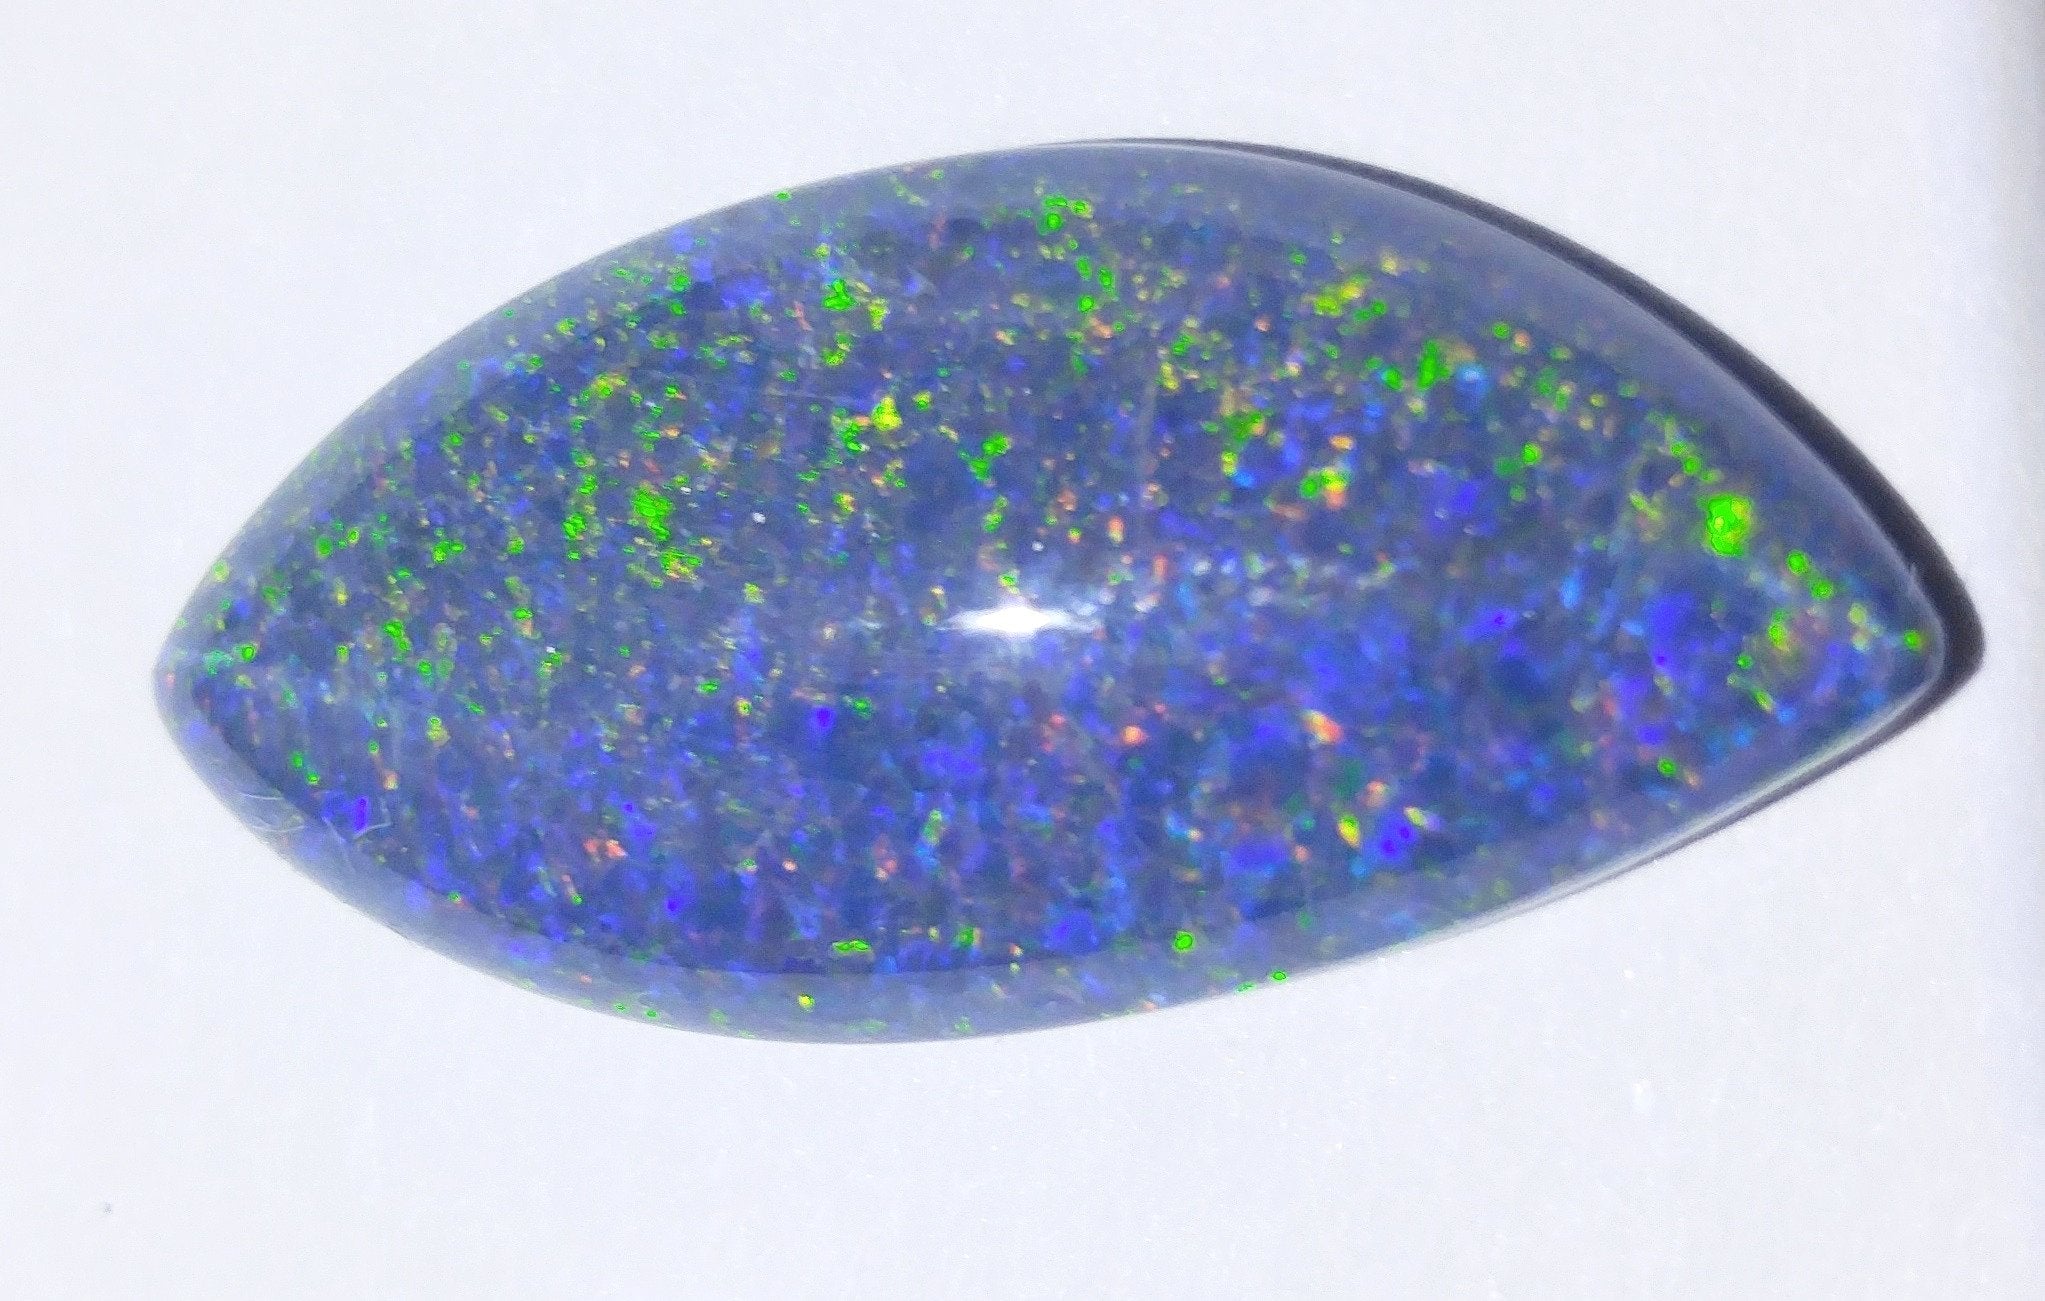 28 mm x 13 mm Precious Opal Freeform Triplet - Spencer Idaho